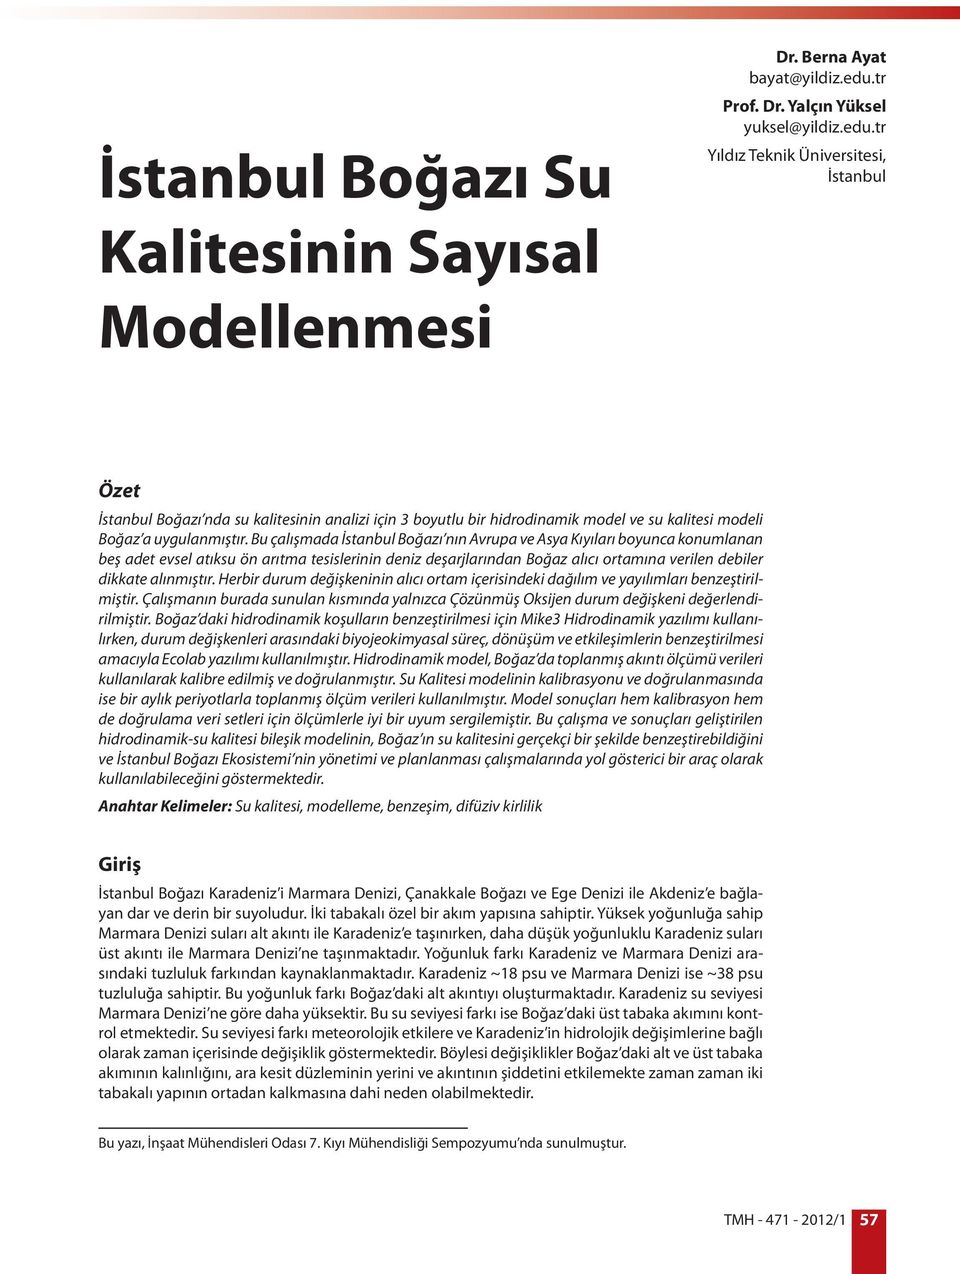 tr Yıldız Teknik Üniversitesi, İstanbul Özet İstanbul Boğazı nda su kalitesinin analizi için 3 boyutlu bir hidrodinamik model ve su kalitesi modeli Boğaz a uygulanmıştır.